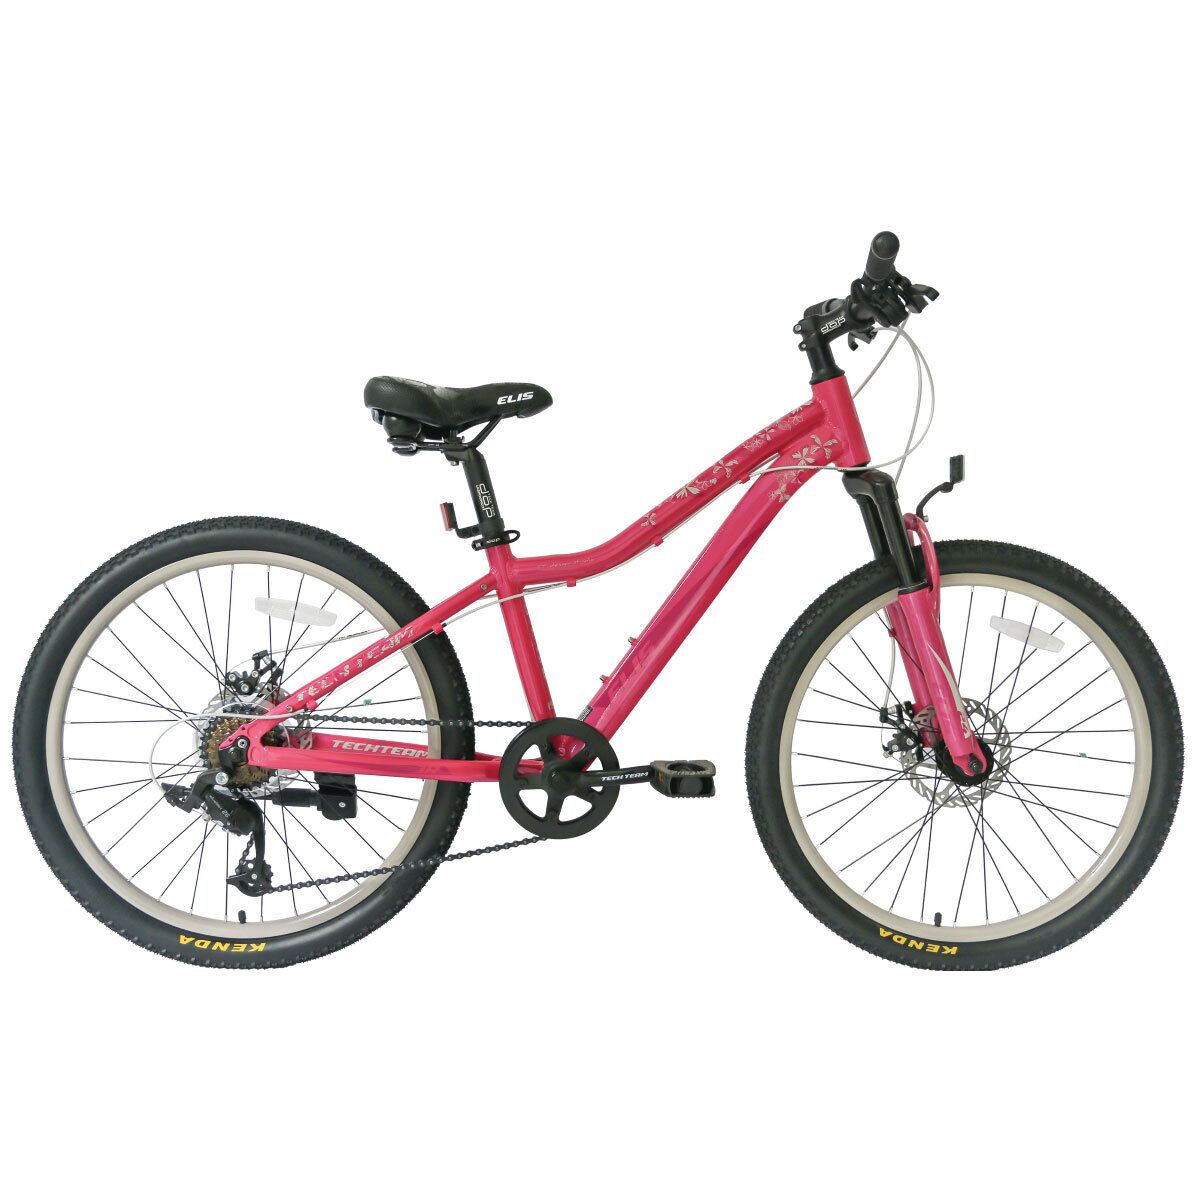 Фото выбрать и купить велосипед tech team elis 24 disc (2022) красный велосипеды с доставкой, в магазине или со склада в СПб - большой выбор для подростка, велосипед tech team elis 24 disc (2022) красный велосипеды в наличии - интернет-магазин Мастерская Тимура